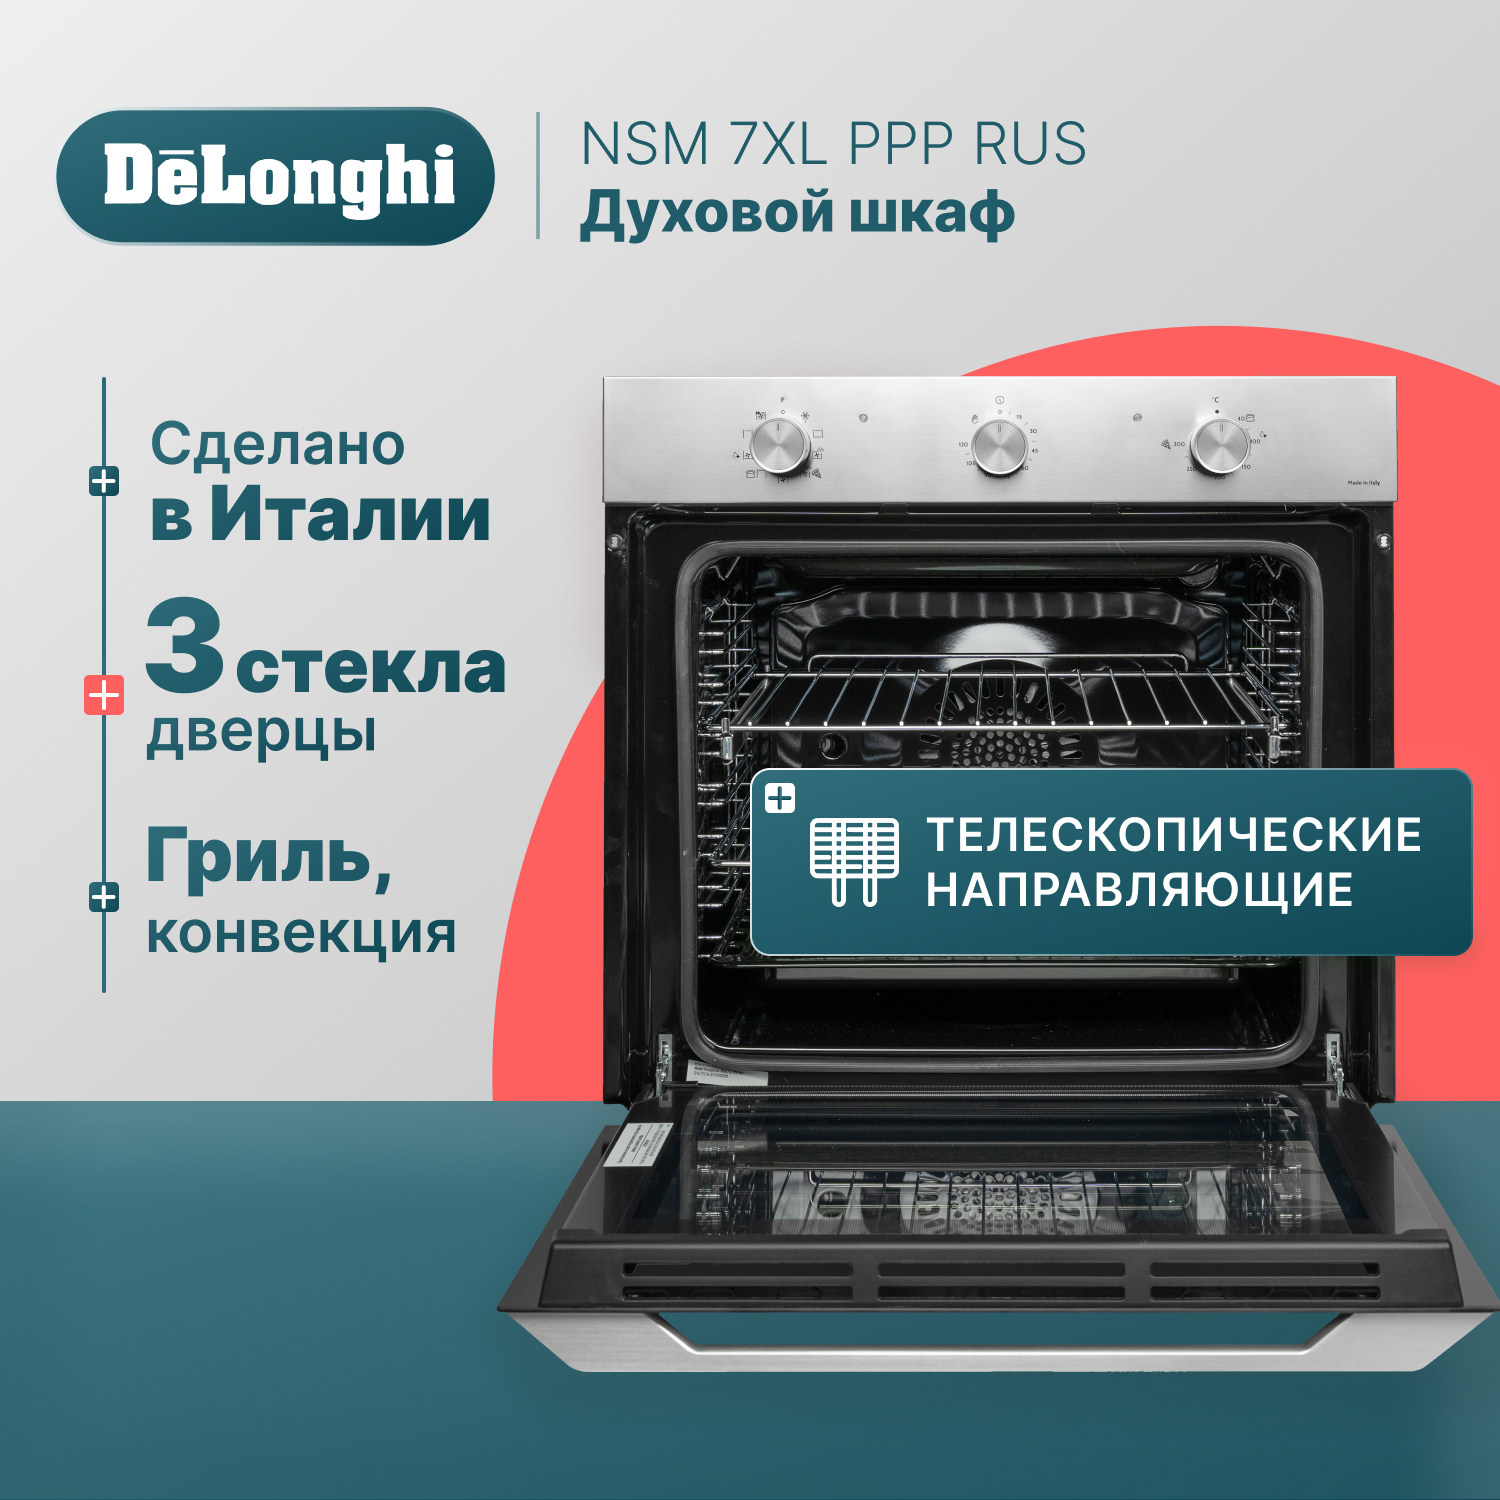 Встраиваемый электрический духовой шкаф Delonghi NSM 7XL PPP RUS серебристый, черный электрогриль delonghi cgh920 серебристый